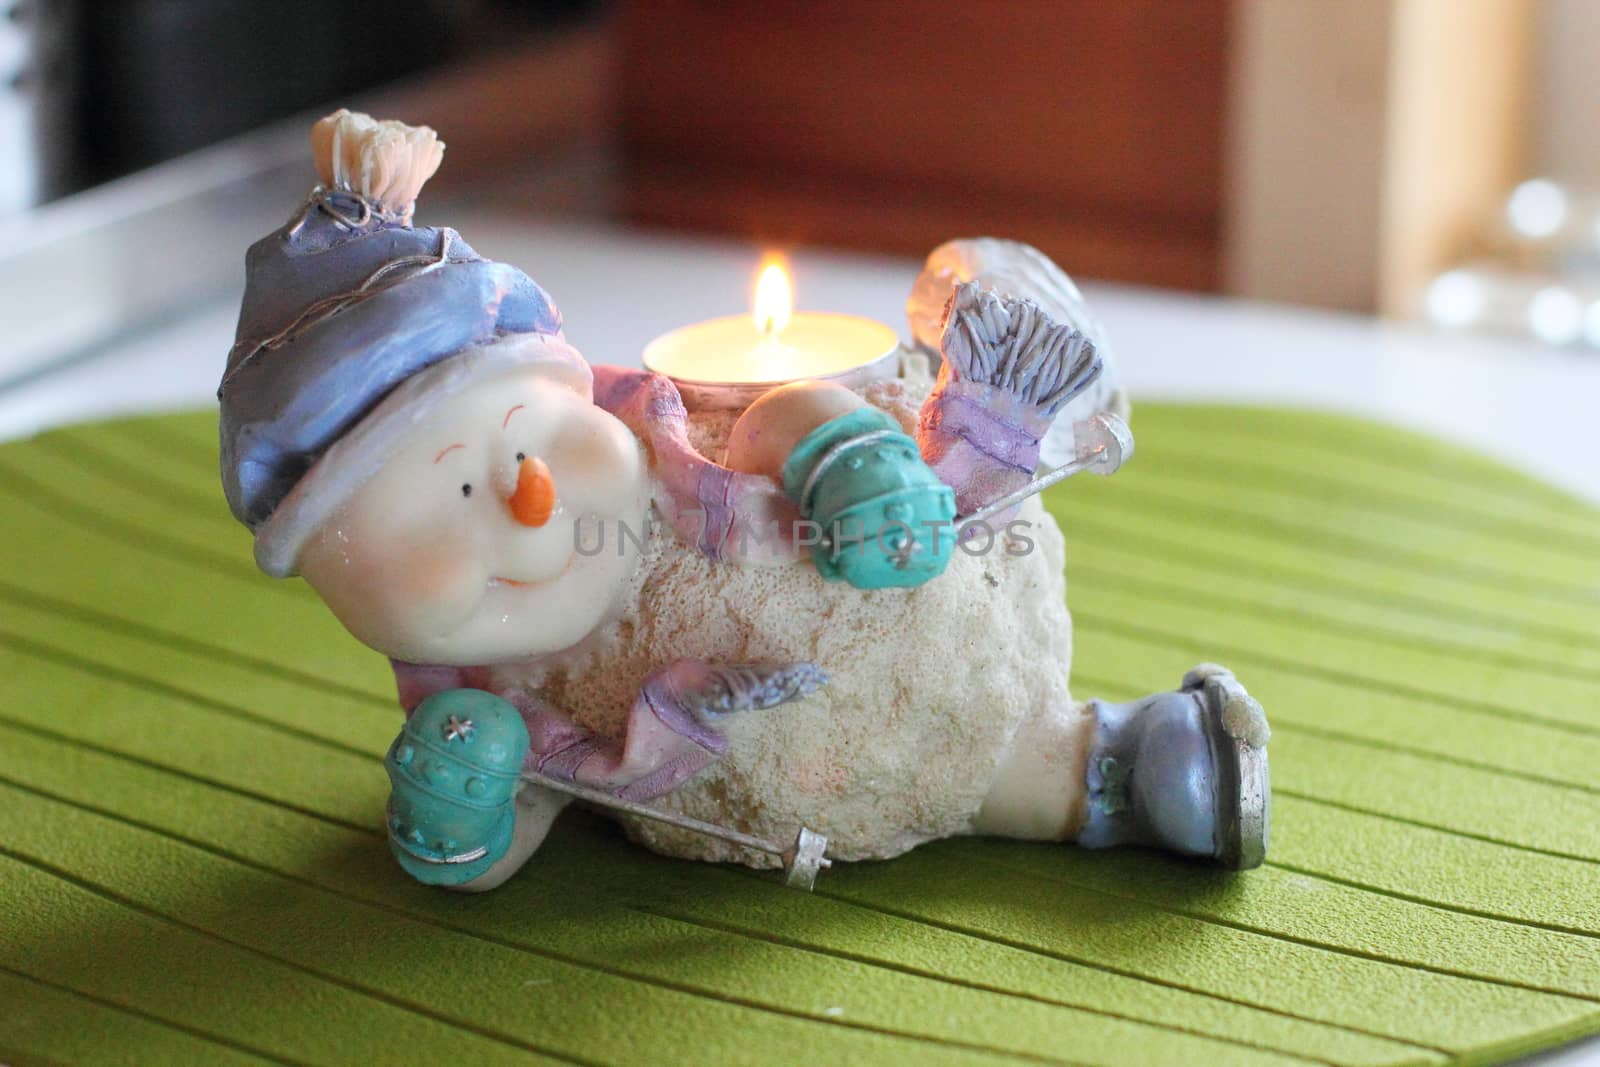 Cheerful snowman skier. Candlestick. by Metanna